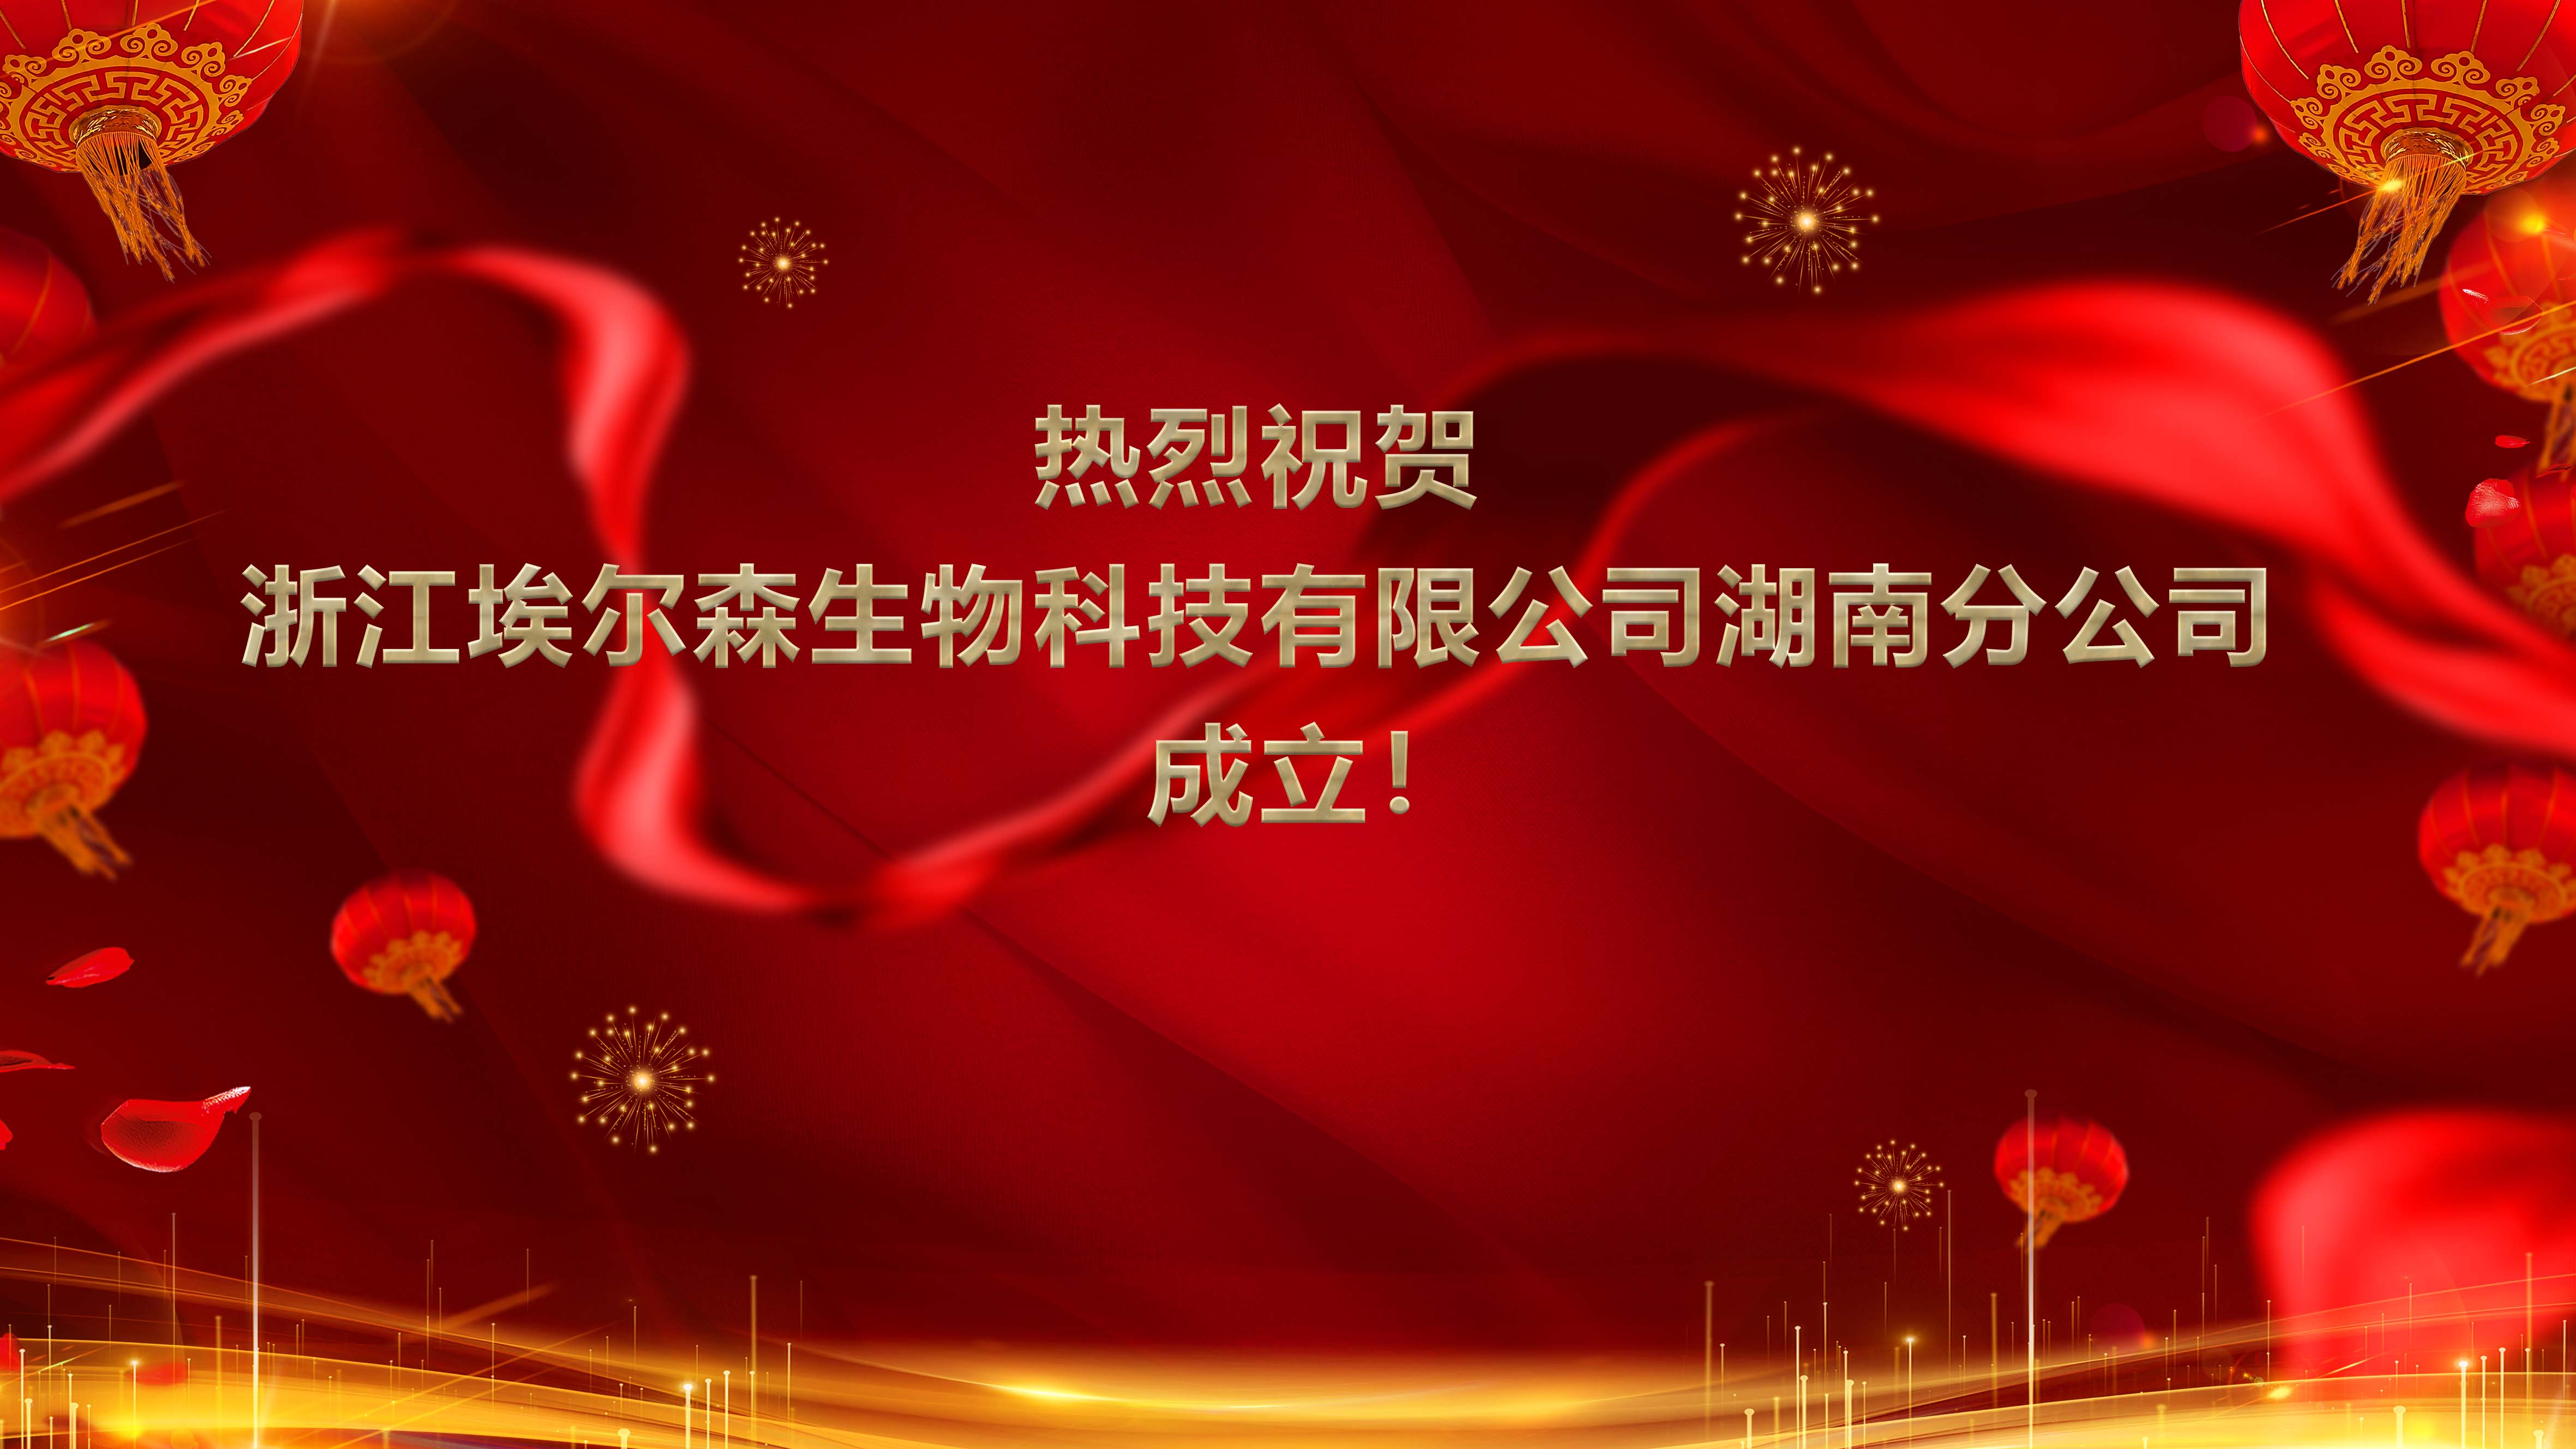 熱烈祝賀浙江埃爾森生物科技有限公司湖南分公司成立！